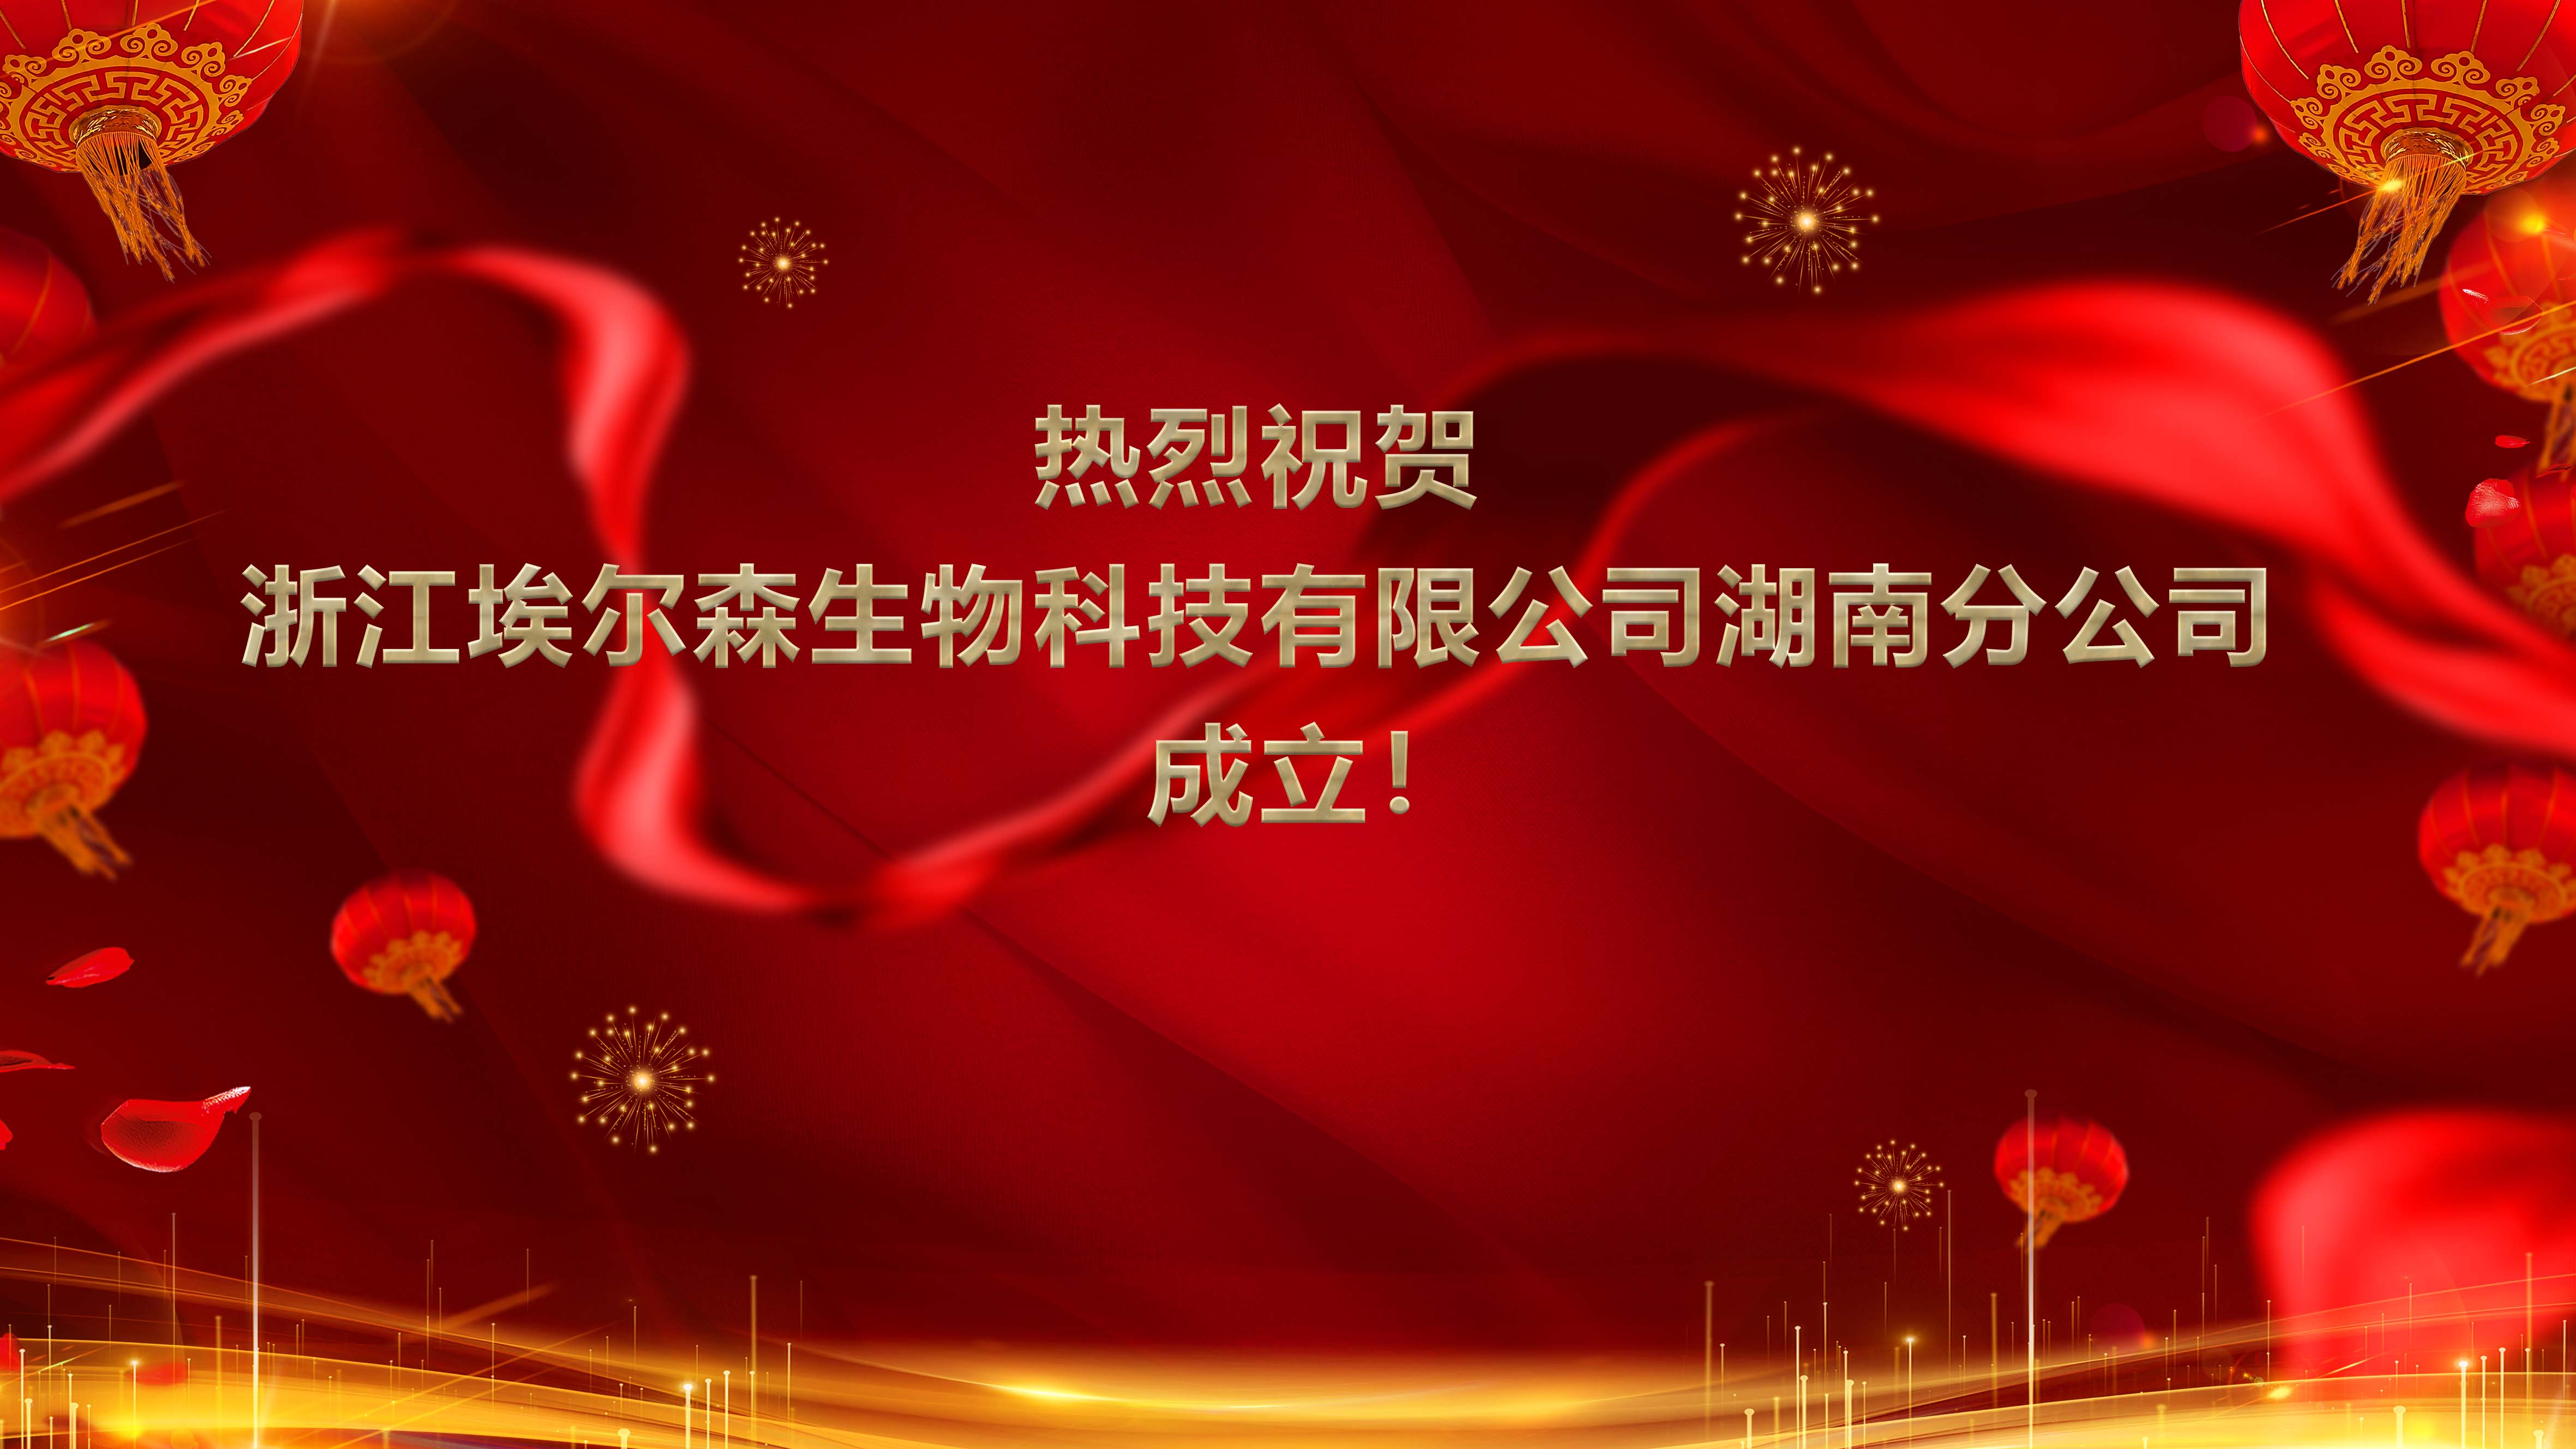 熱烈祝賀浙江埃爾森生物科技有限公司湖南分公司成立！